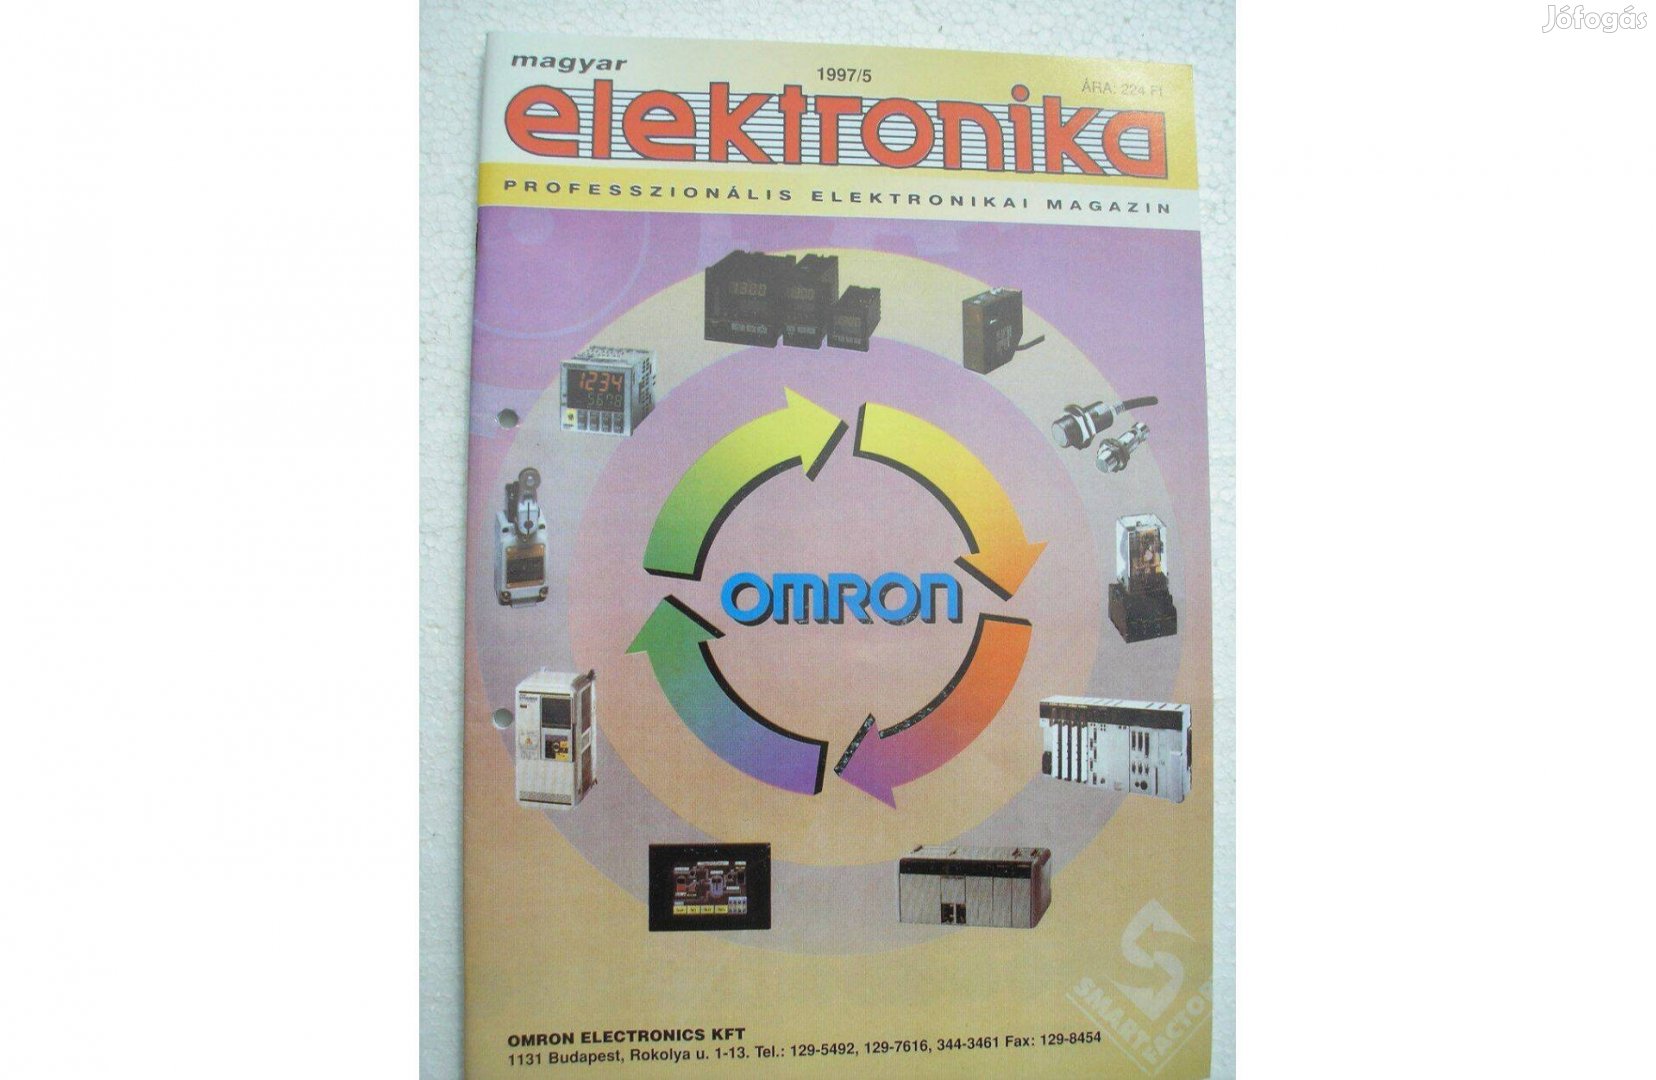 Magyar Elektronika - professzionális elektronikai szaklapok